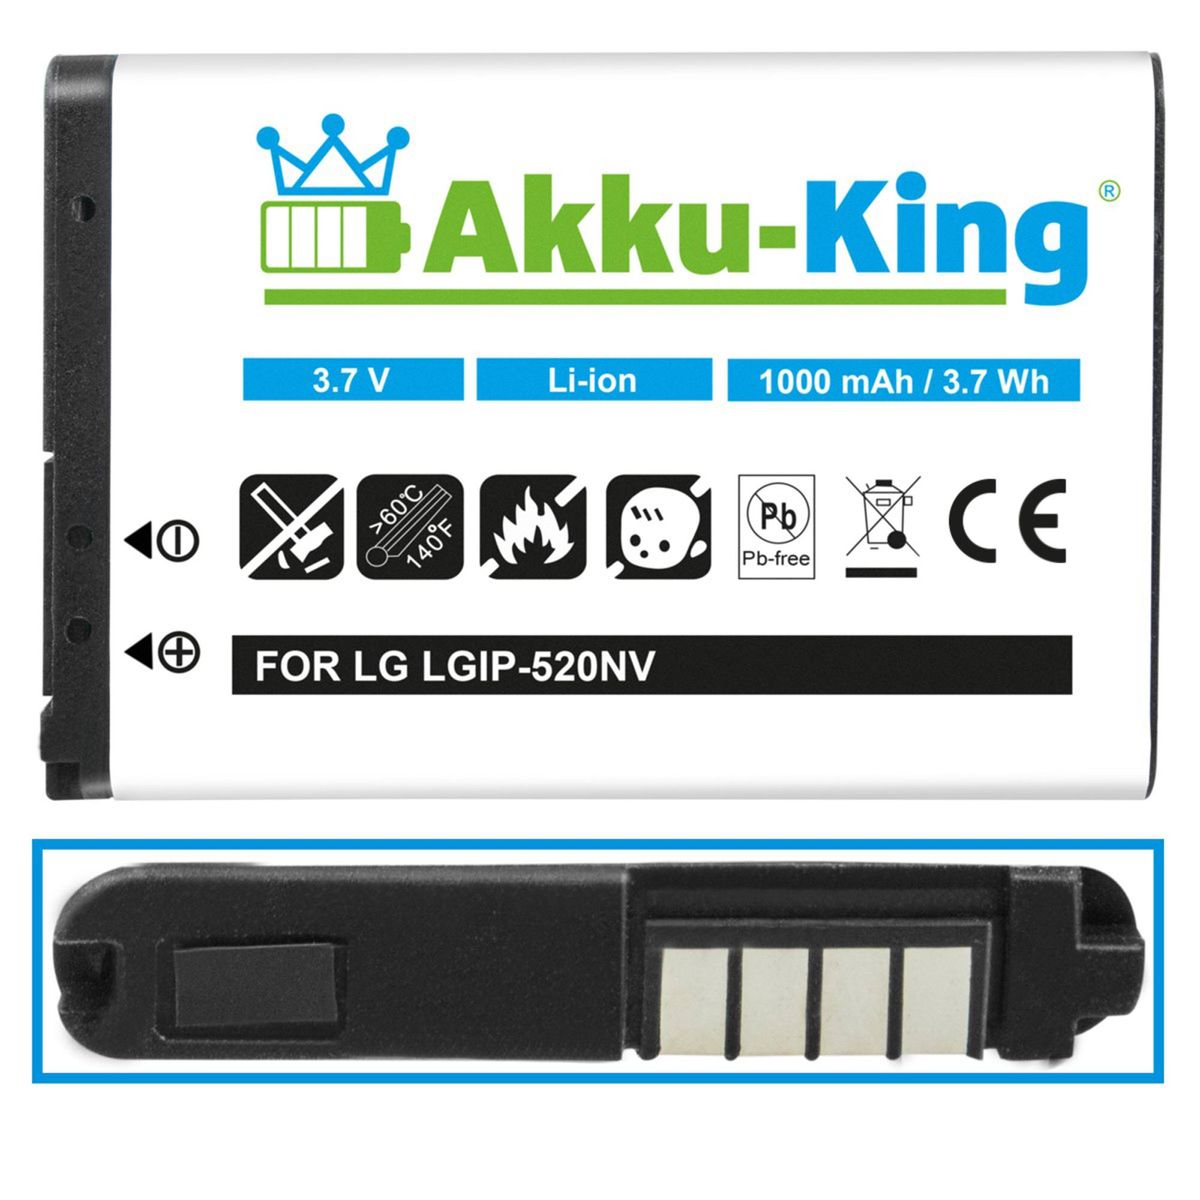 Handy-Akku, LG mit kompatibel Akku 3.7 1000mAh LGIP-520N AKKU-KING Li-Ion Volt,